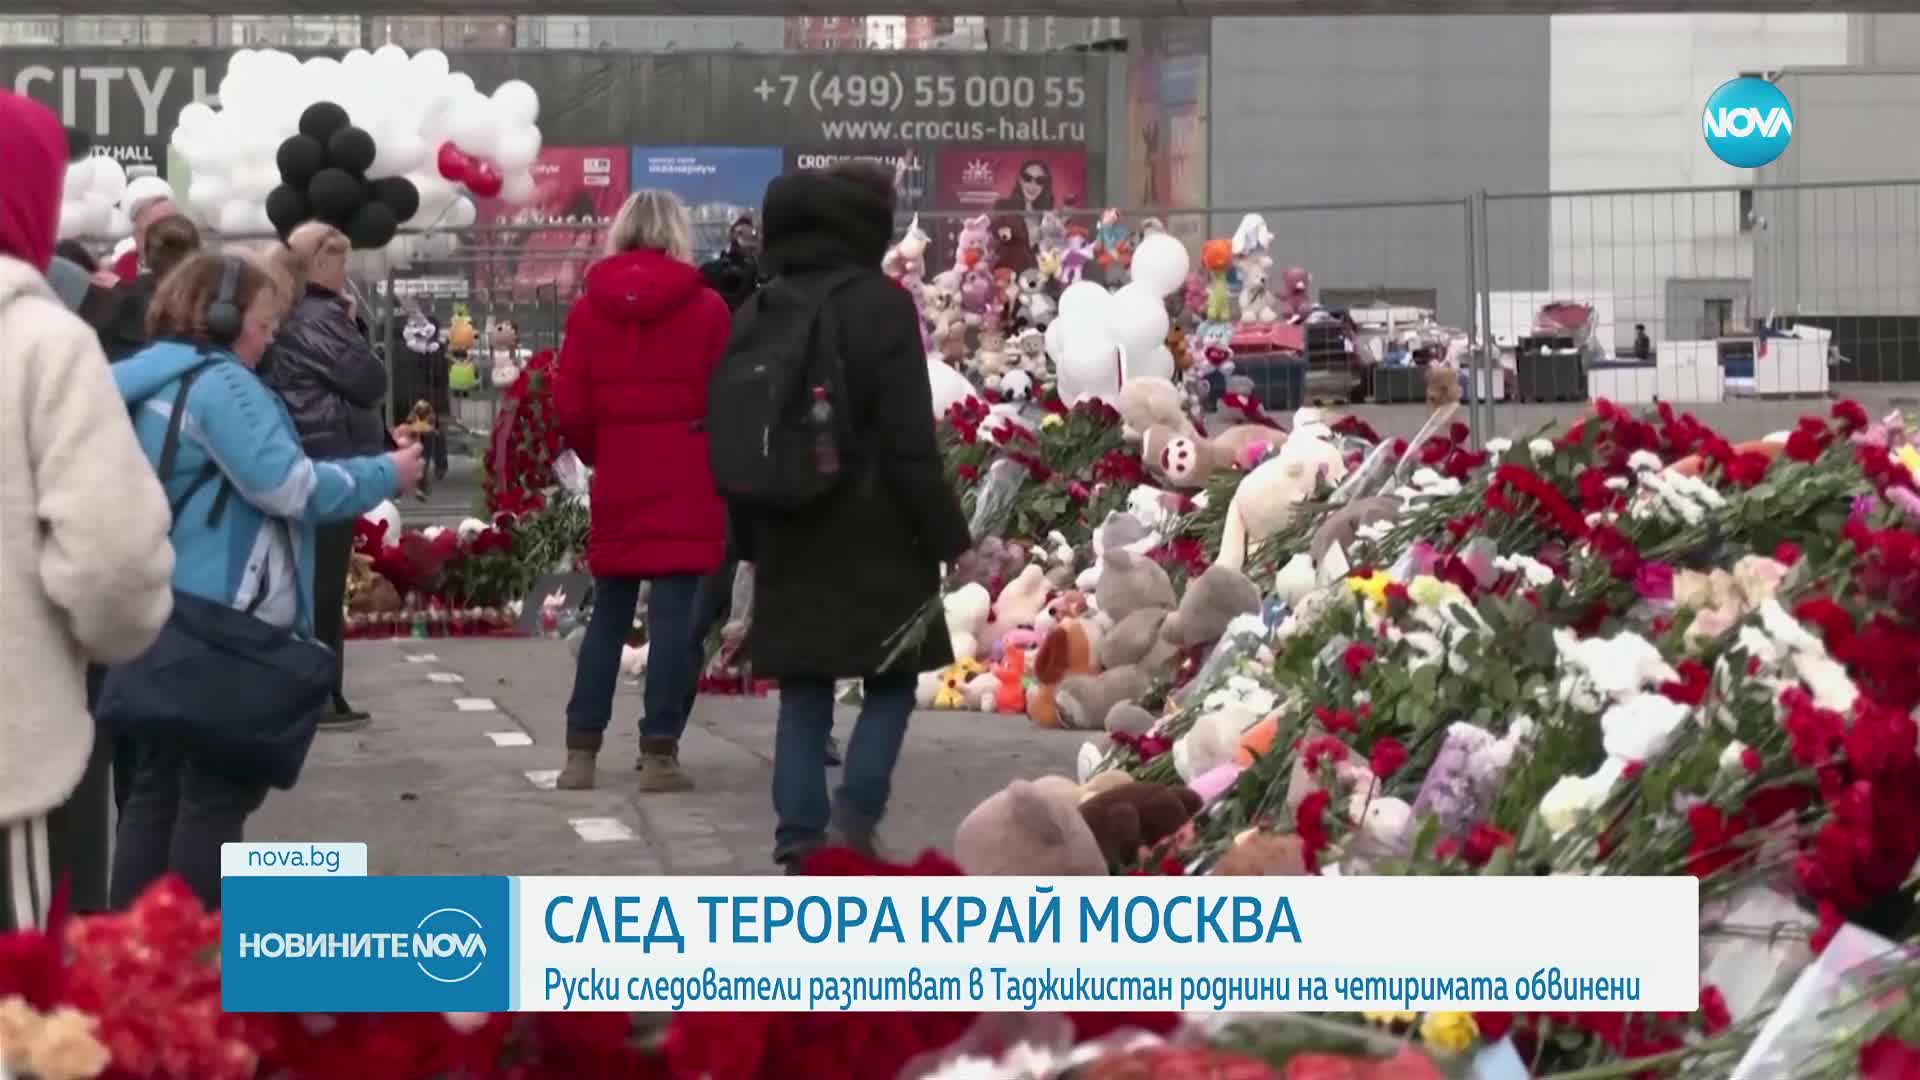 Руски следователи разпитват семействата на обвинените за атентата край Москва